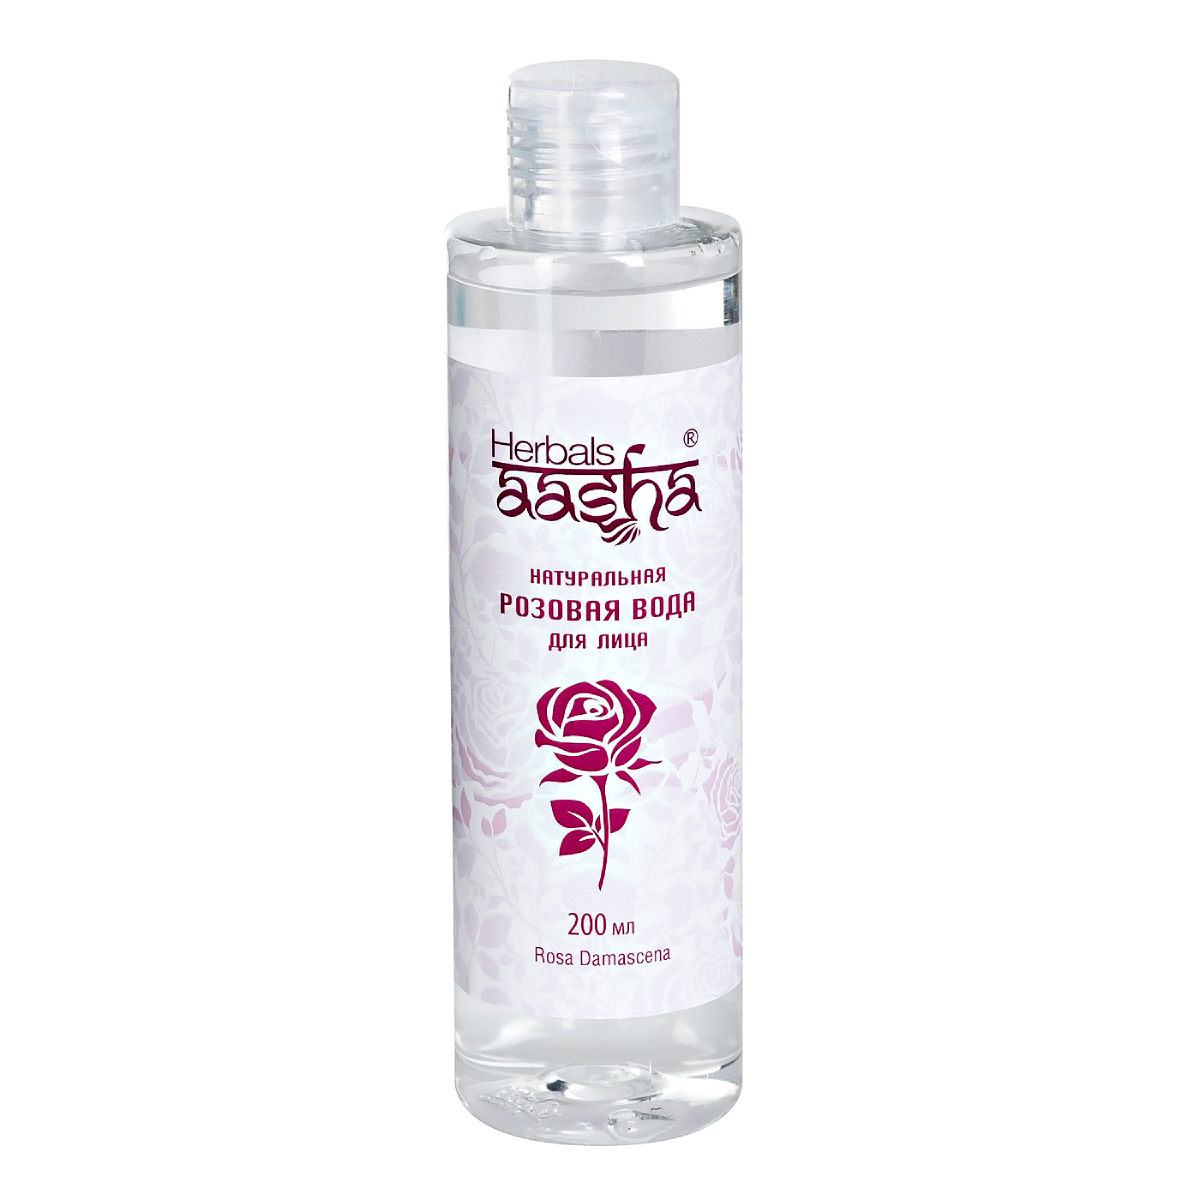 Натуральная розовая вода Aasha Herbals для лица, 200 мл скраб для лица губ и декольте 150 мл